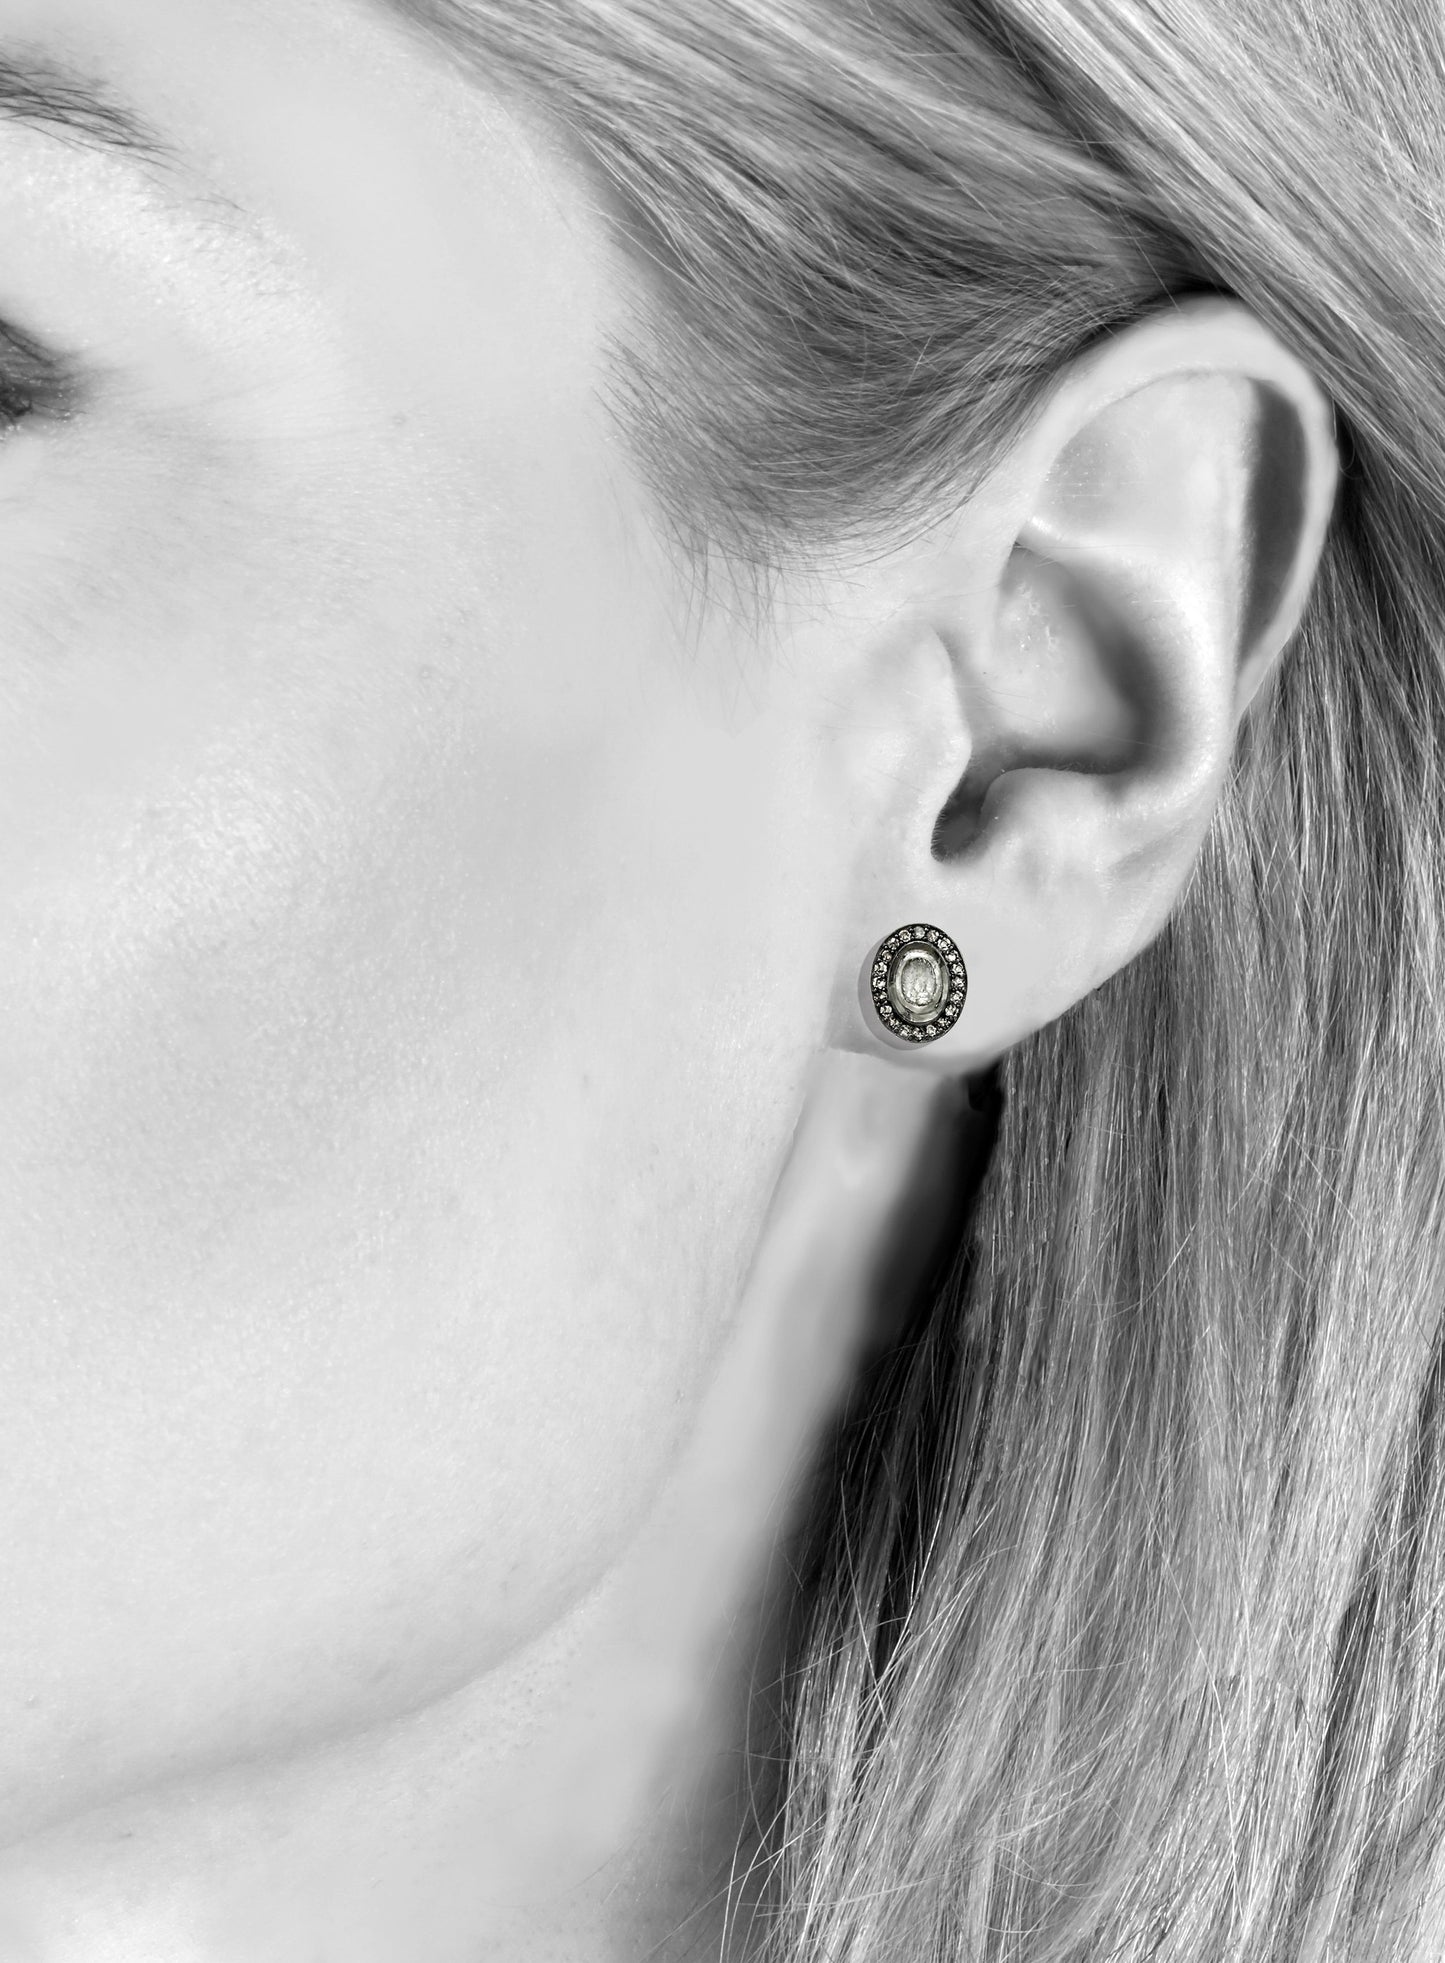 Oval raw diamond post earrings, 0.51 cttw., 18kt/ss, 18kt post, 7/16” H x 3/8” W